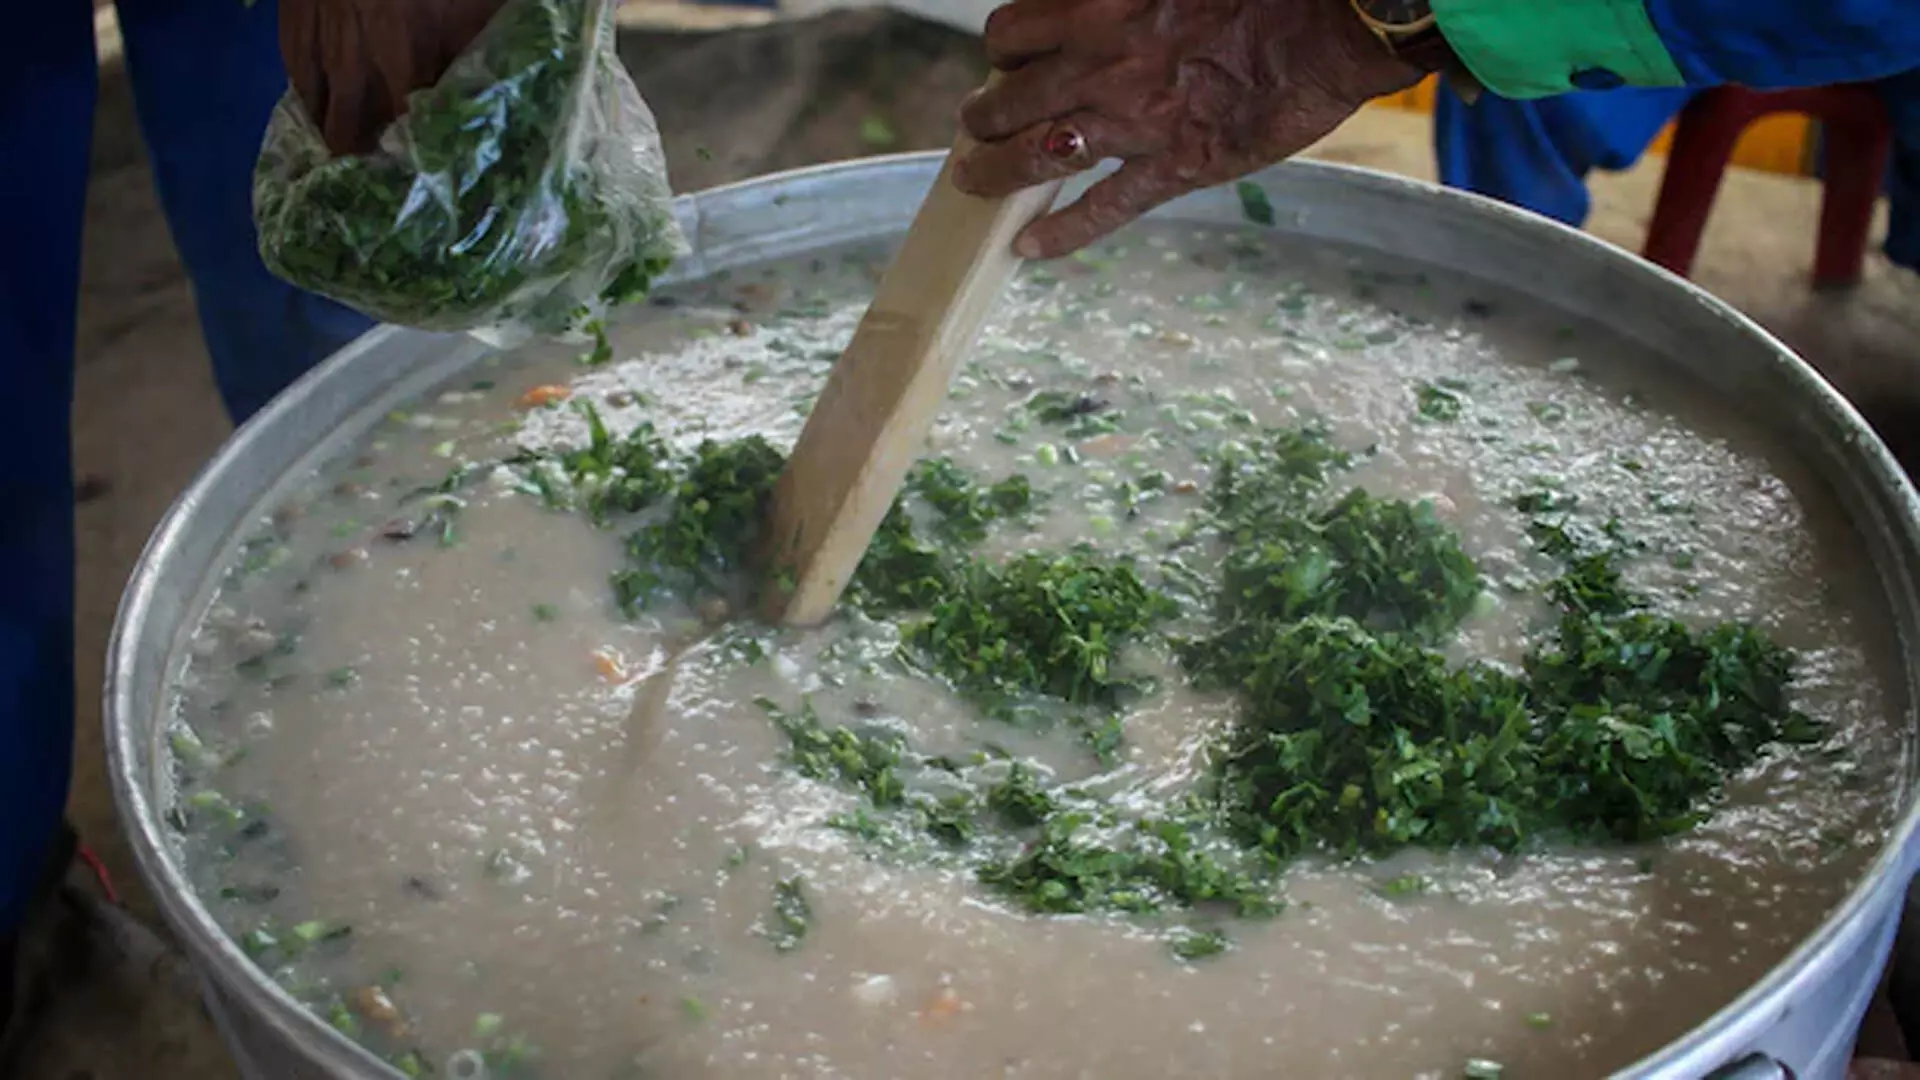 दक्षिण भारतीय अन्नम गंजी गर्मियों के दौरान आपको ठंडक पहुंचाने के लिए एकदम सही व्यंजन